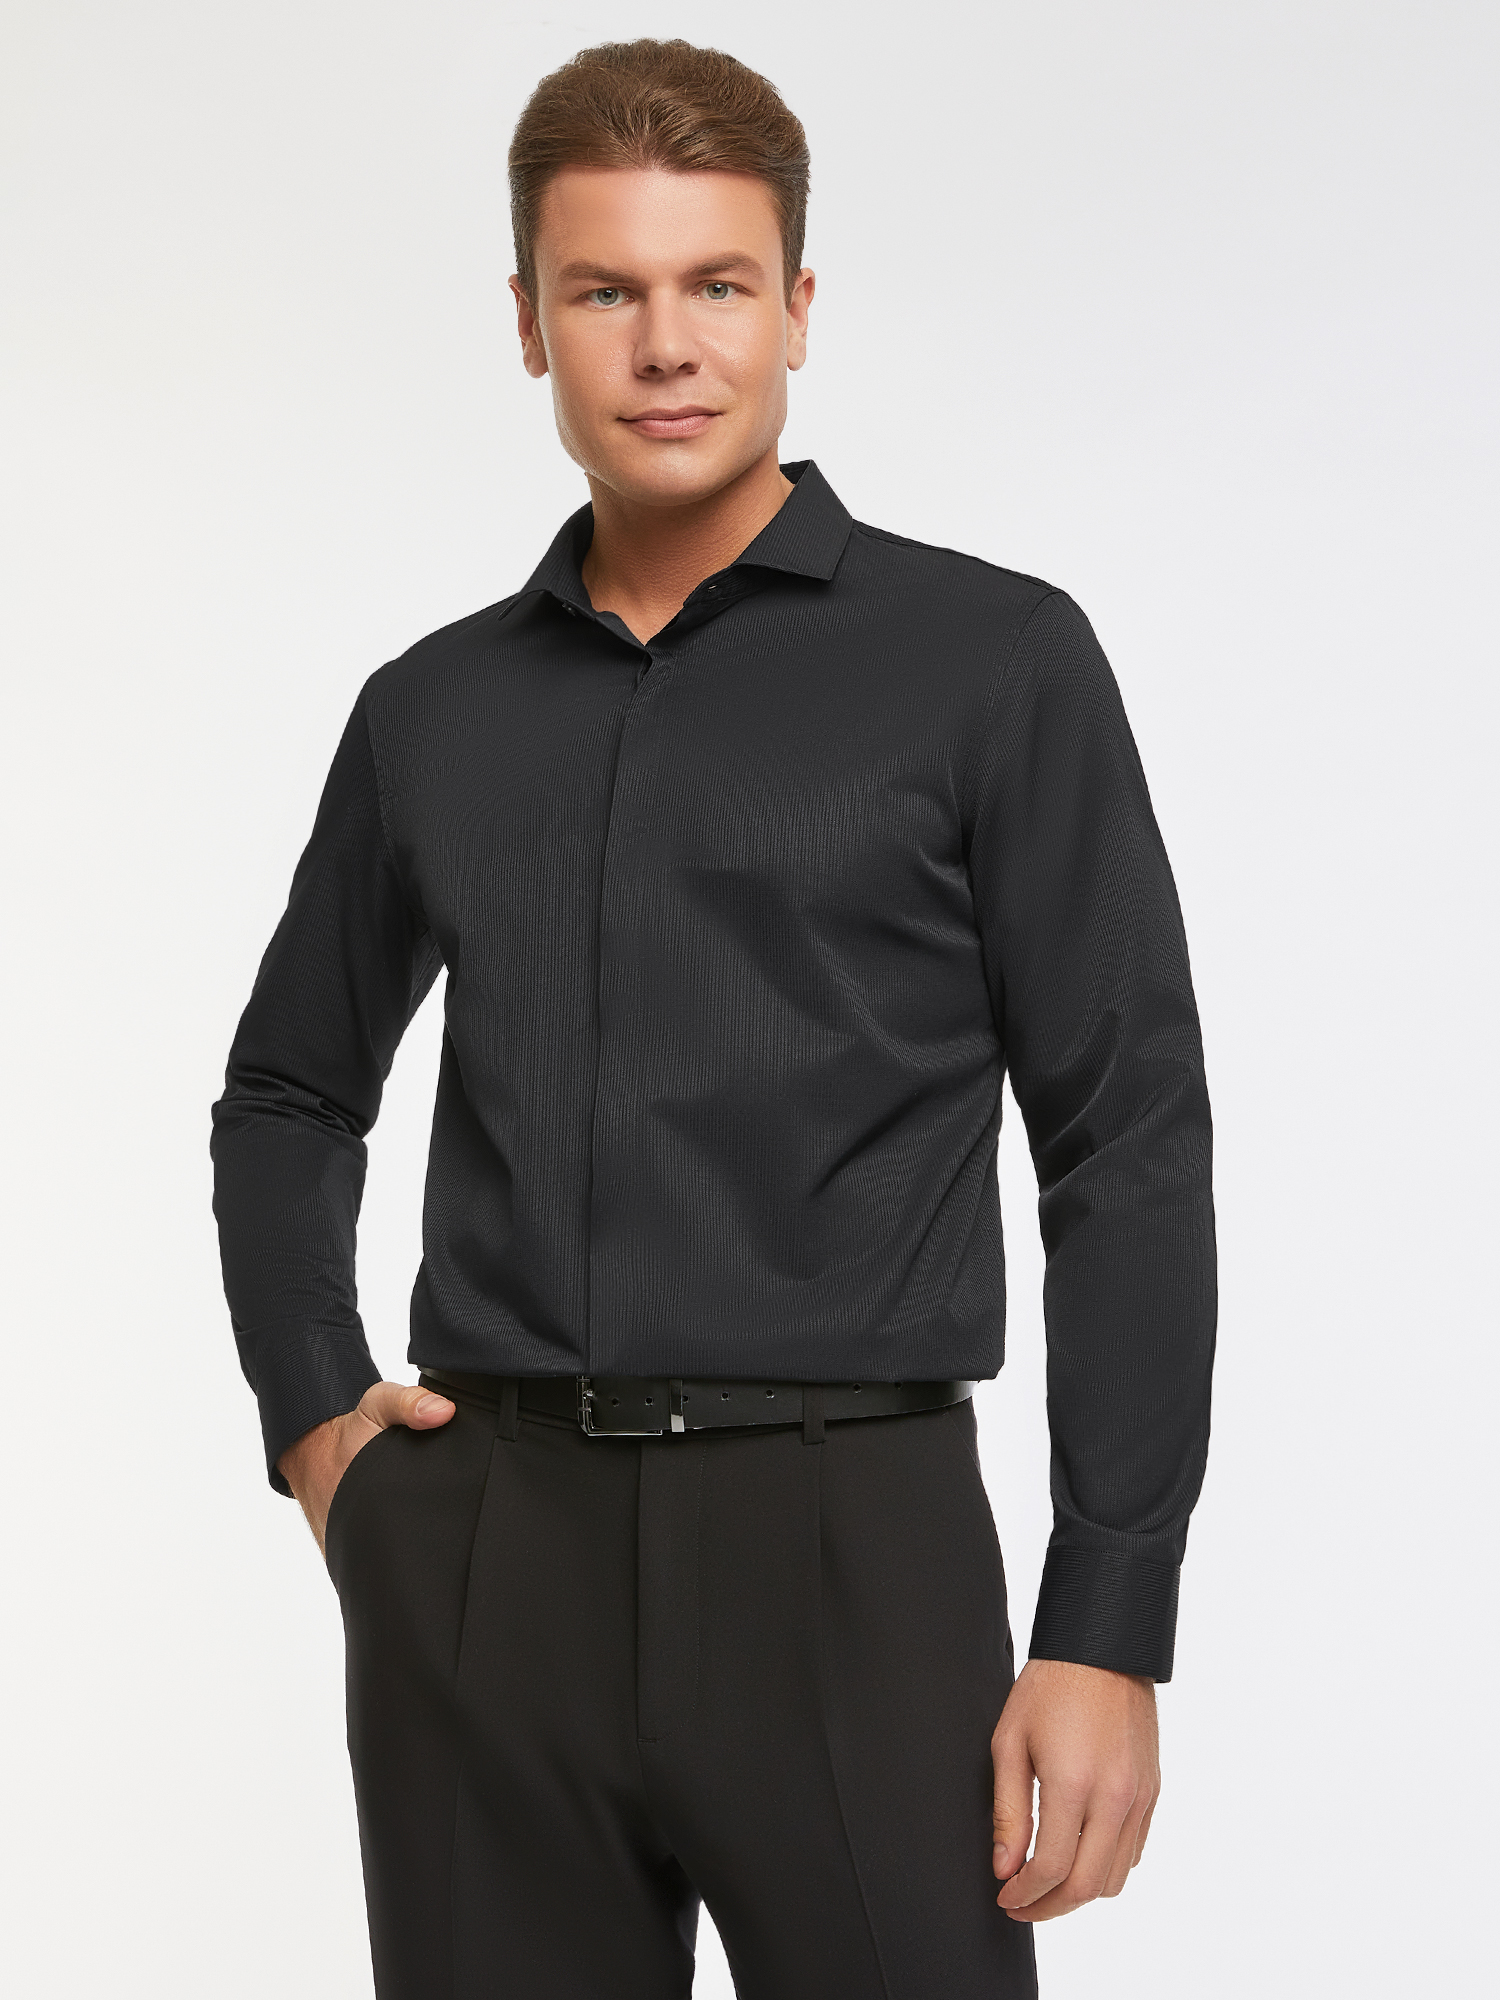 Рубашка мужская oodji 3B110017M-7 черная XS – купить в Москве, цены в интернет-магазинах на Мегамаркет